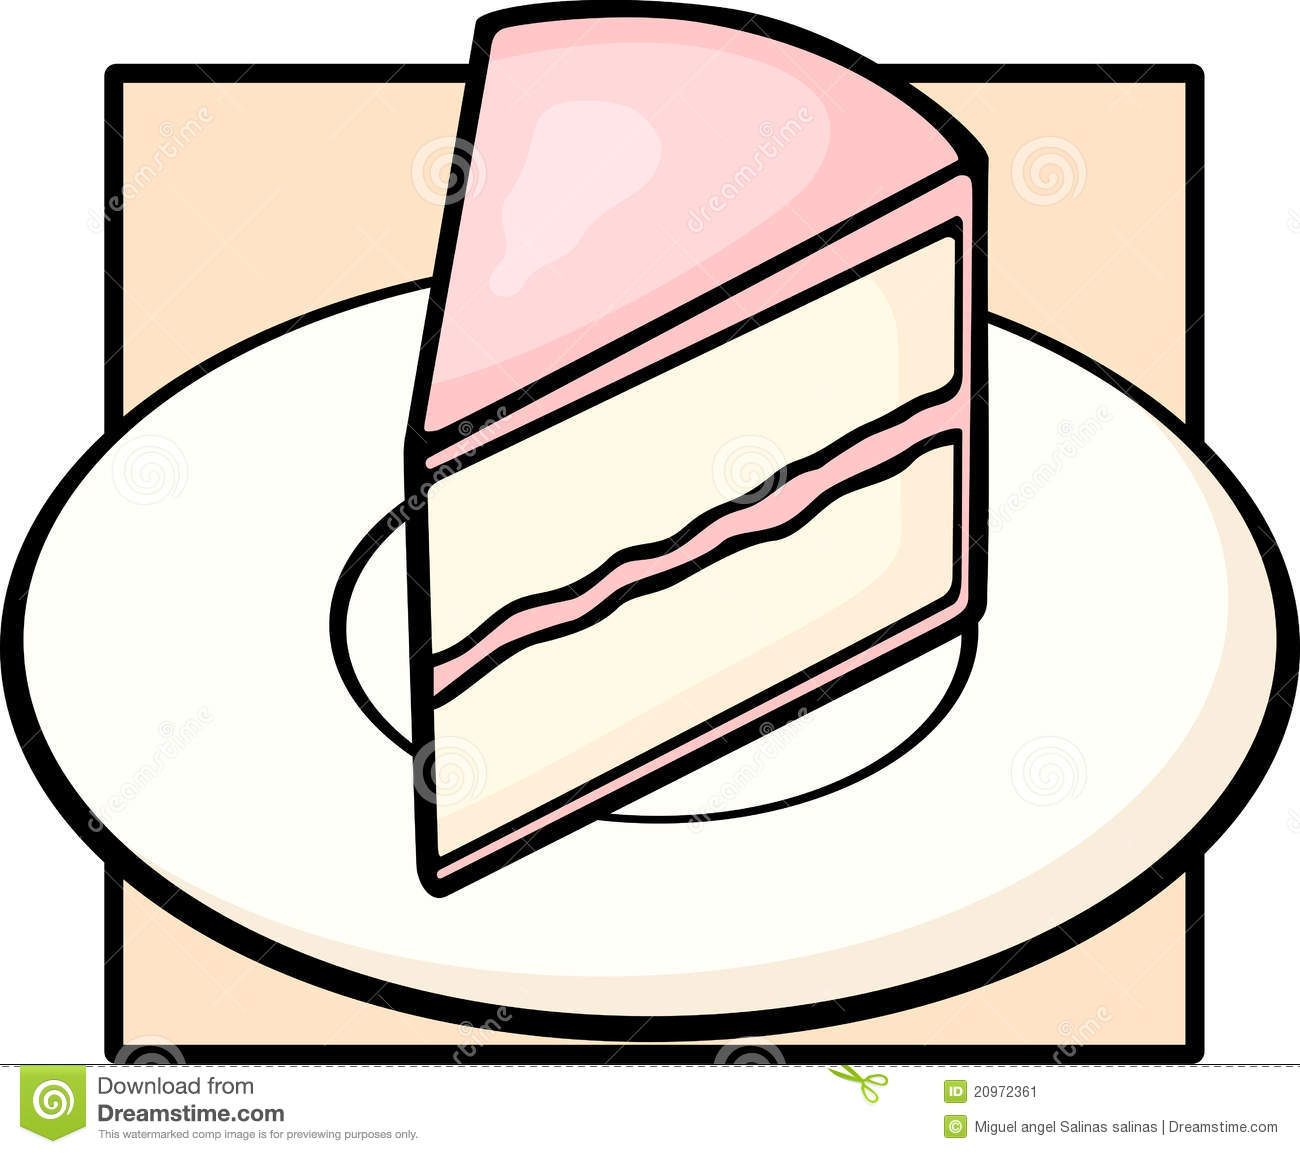 Birthday Cake Slice Clip Art Cake Slice Dish 20972361 Jpg